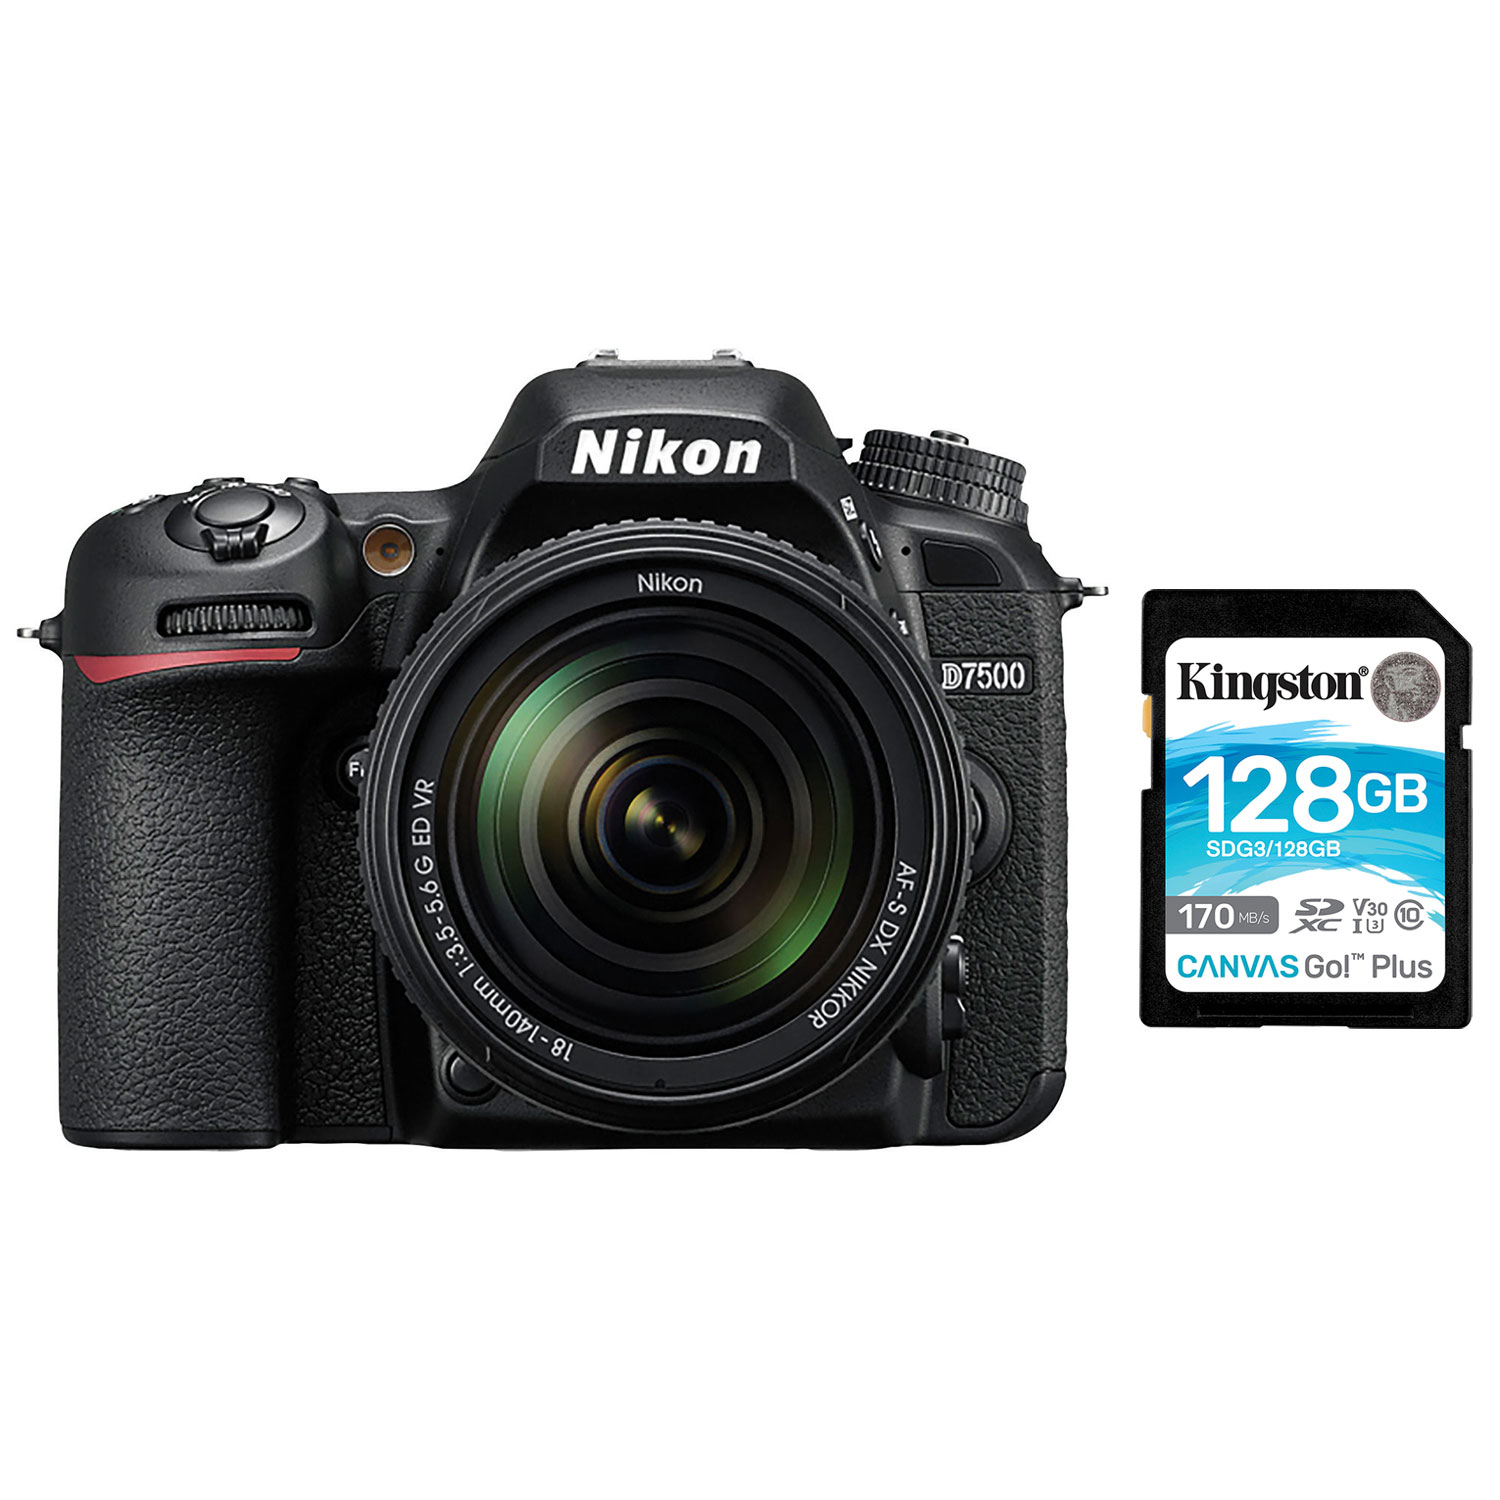 NIKON D7500 DSLR Camera with 18-140mm ED VR Lens Kit & 128GB 170MB/s SDXC Memory Card